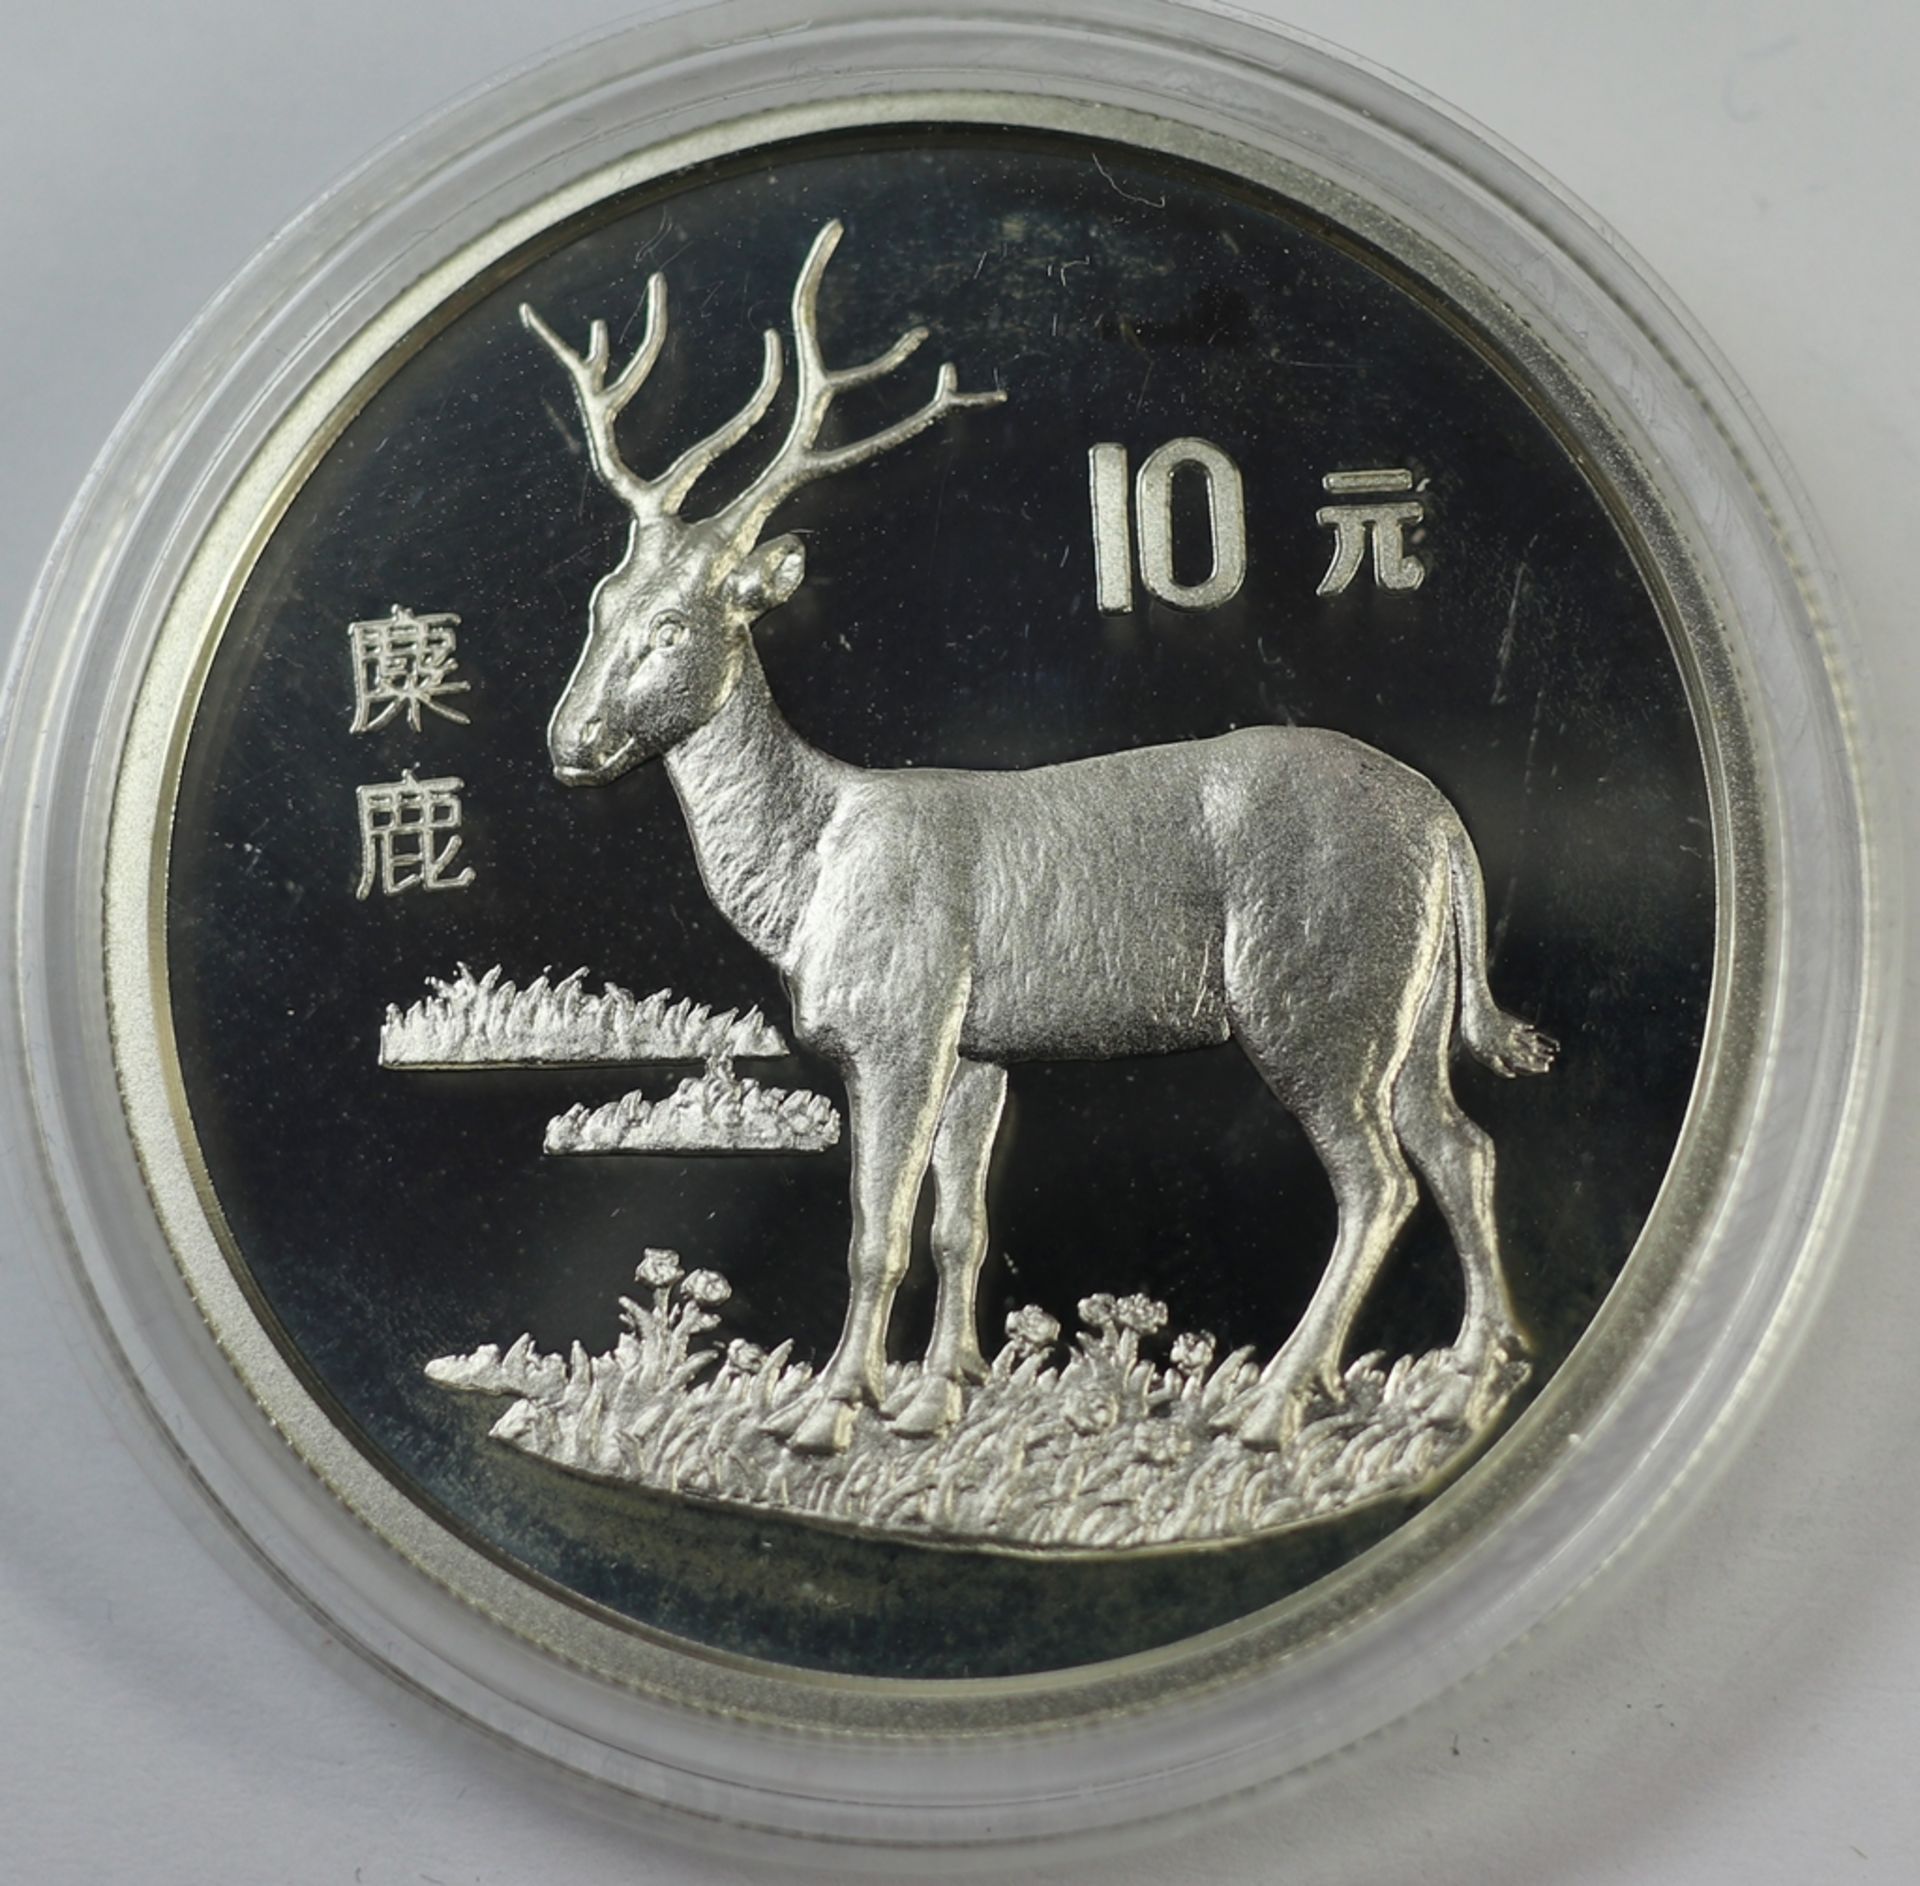 10 Yuan, China Endangered Wildlife Davidshirsch, 1994